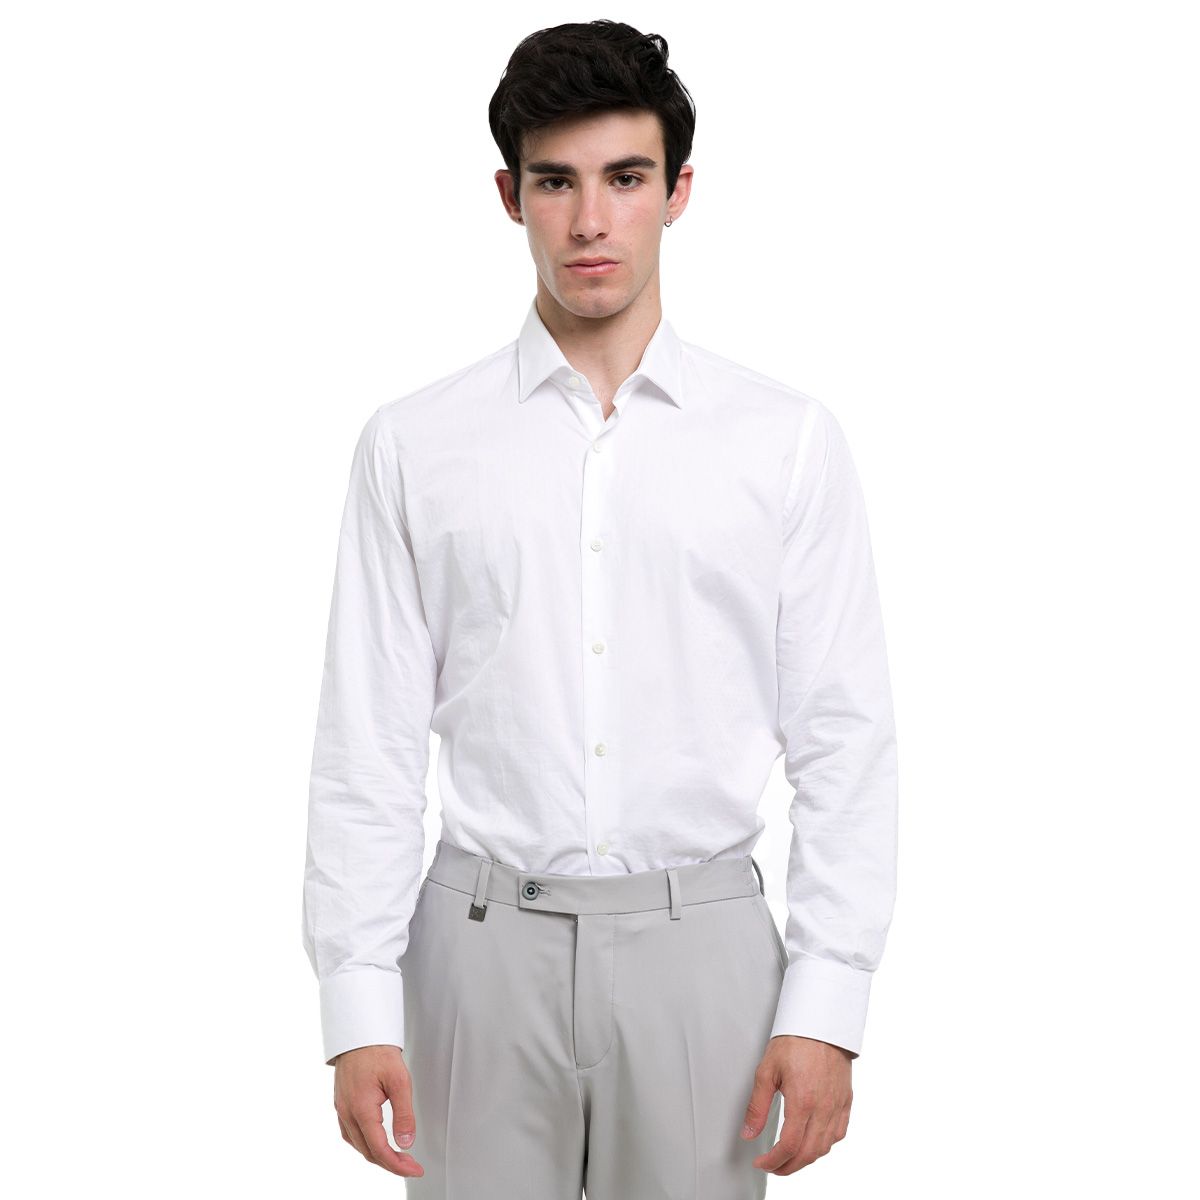 Satin Long Sleeved White Shirt